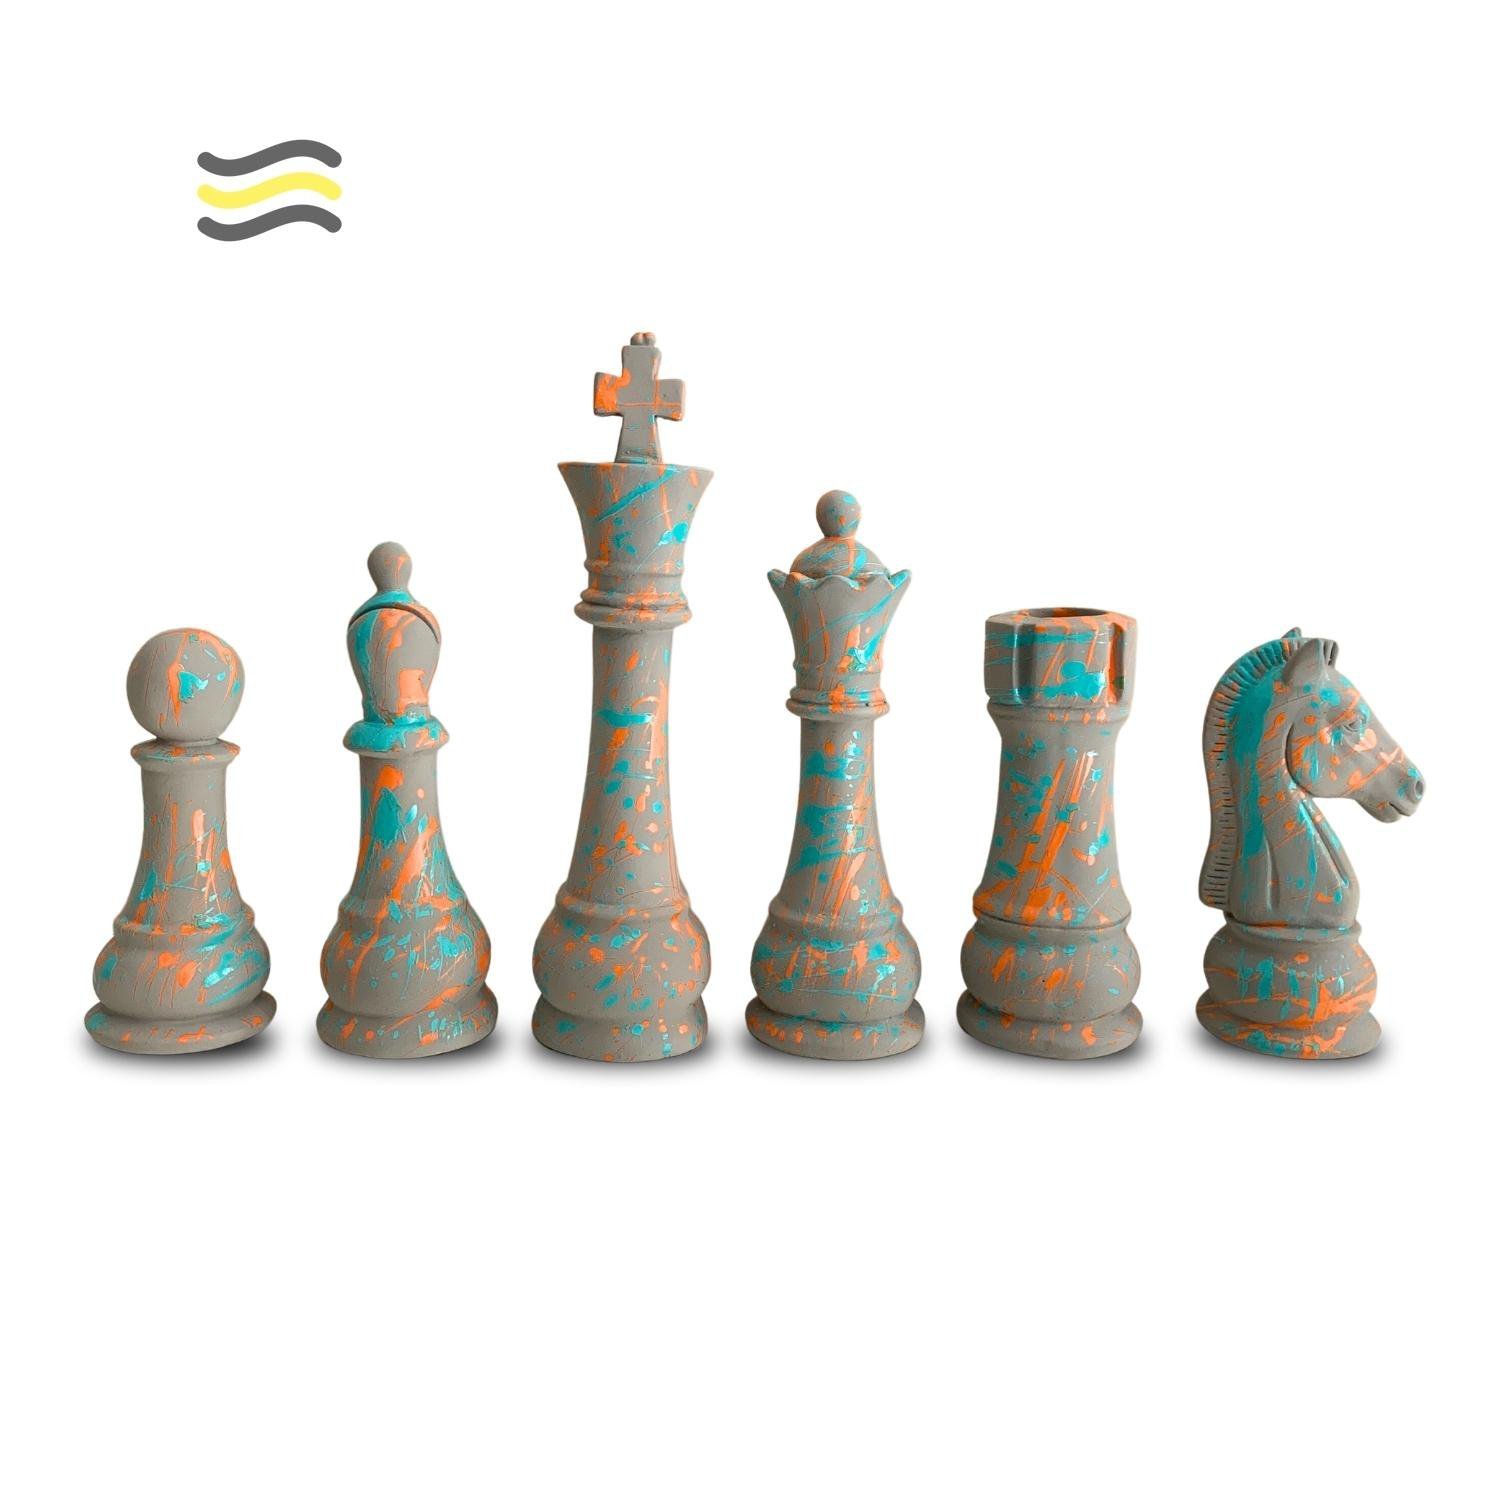 Jogos de mesa de xadrez profissional de 30*30cm com caixa de madeira